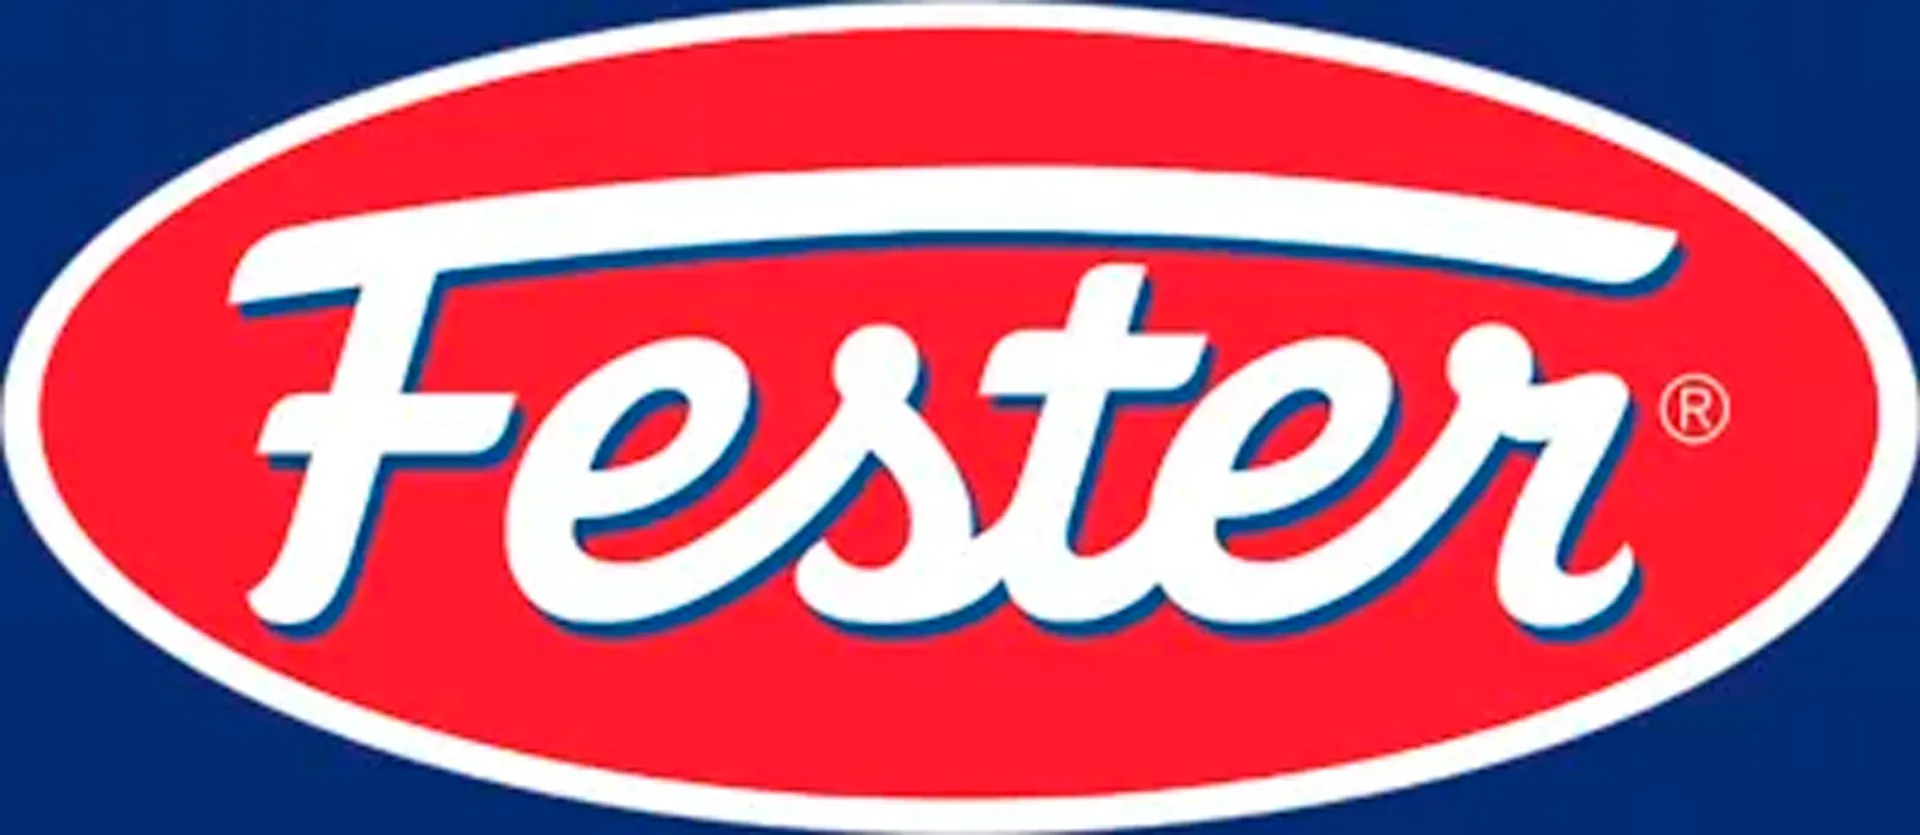 FESTER logo